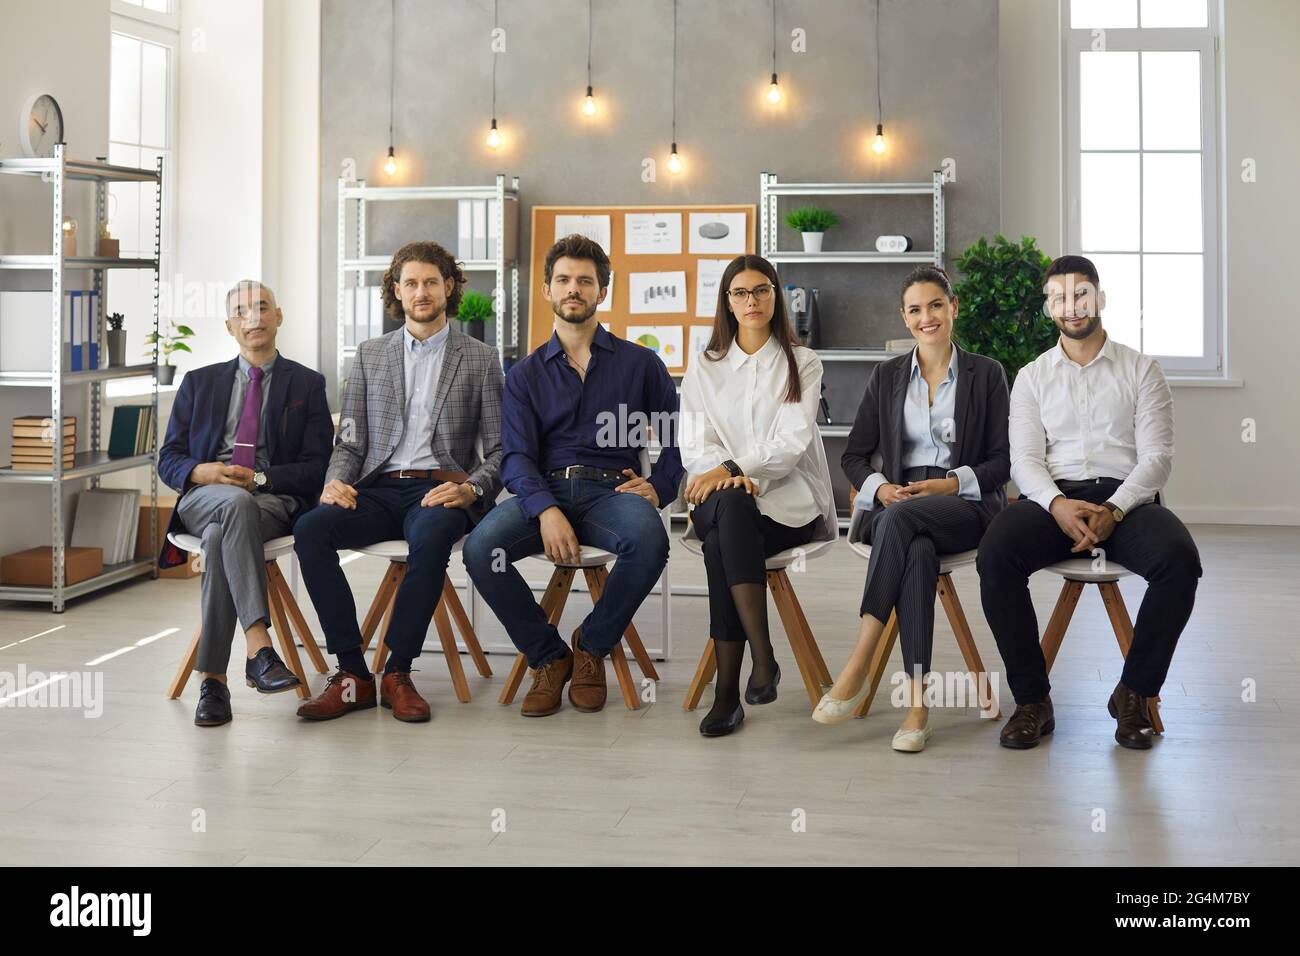 Gruppenporträt von Personen, die während eines Geschäftstreffens oder einer Lehrveranstaltung in Reihe sitzen Stockfoto